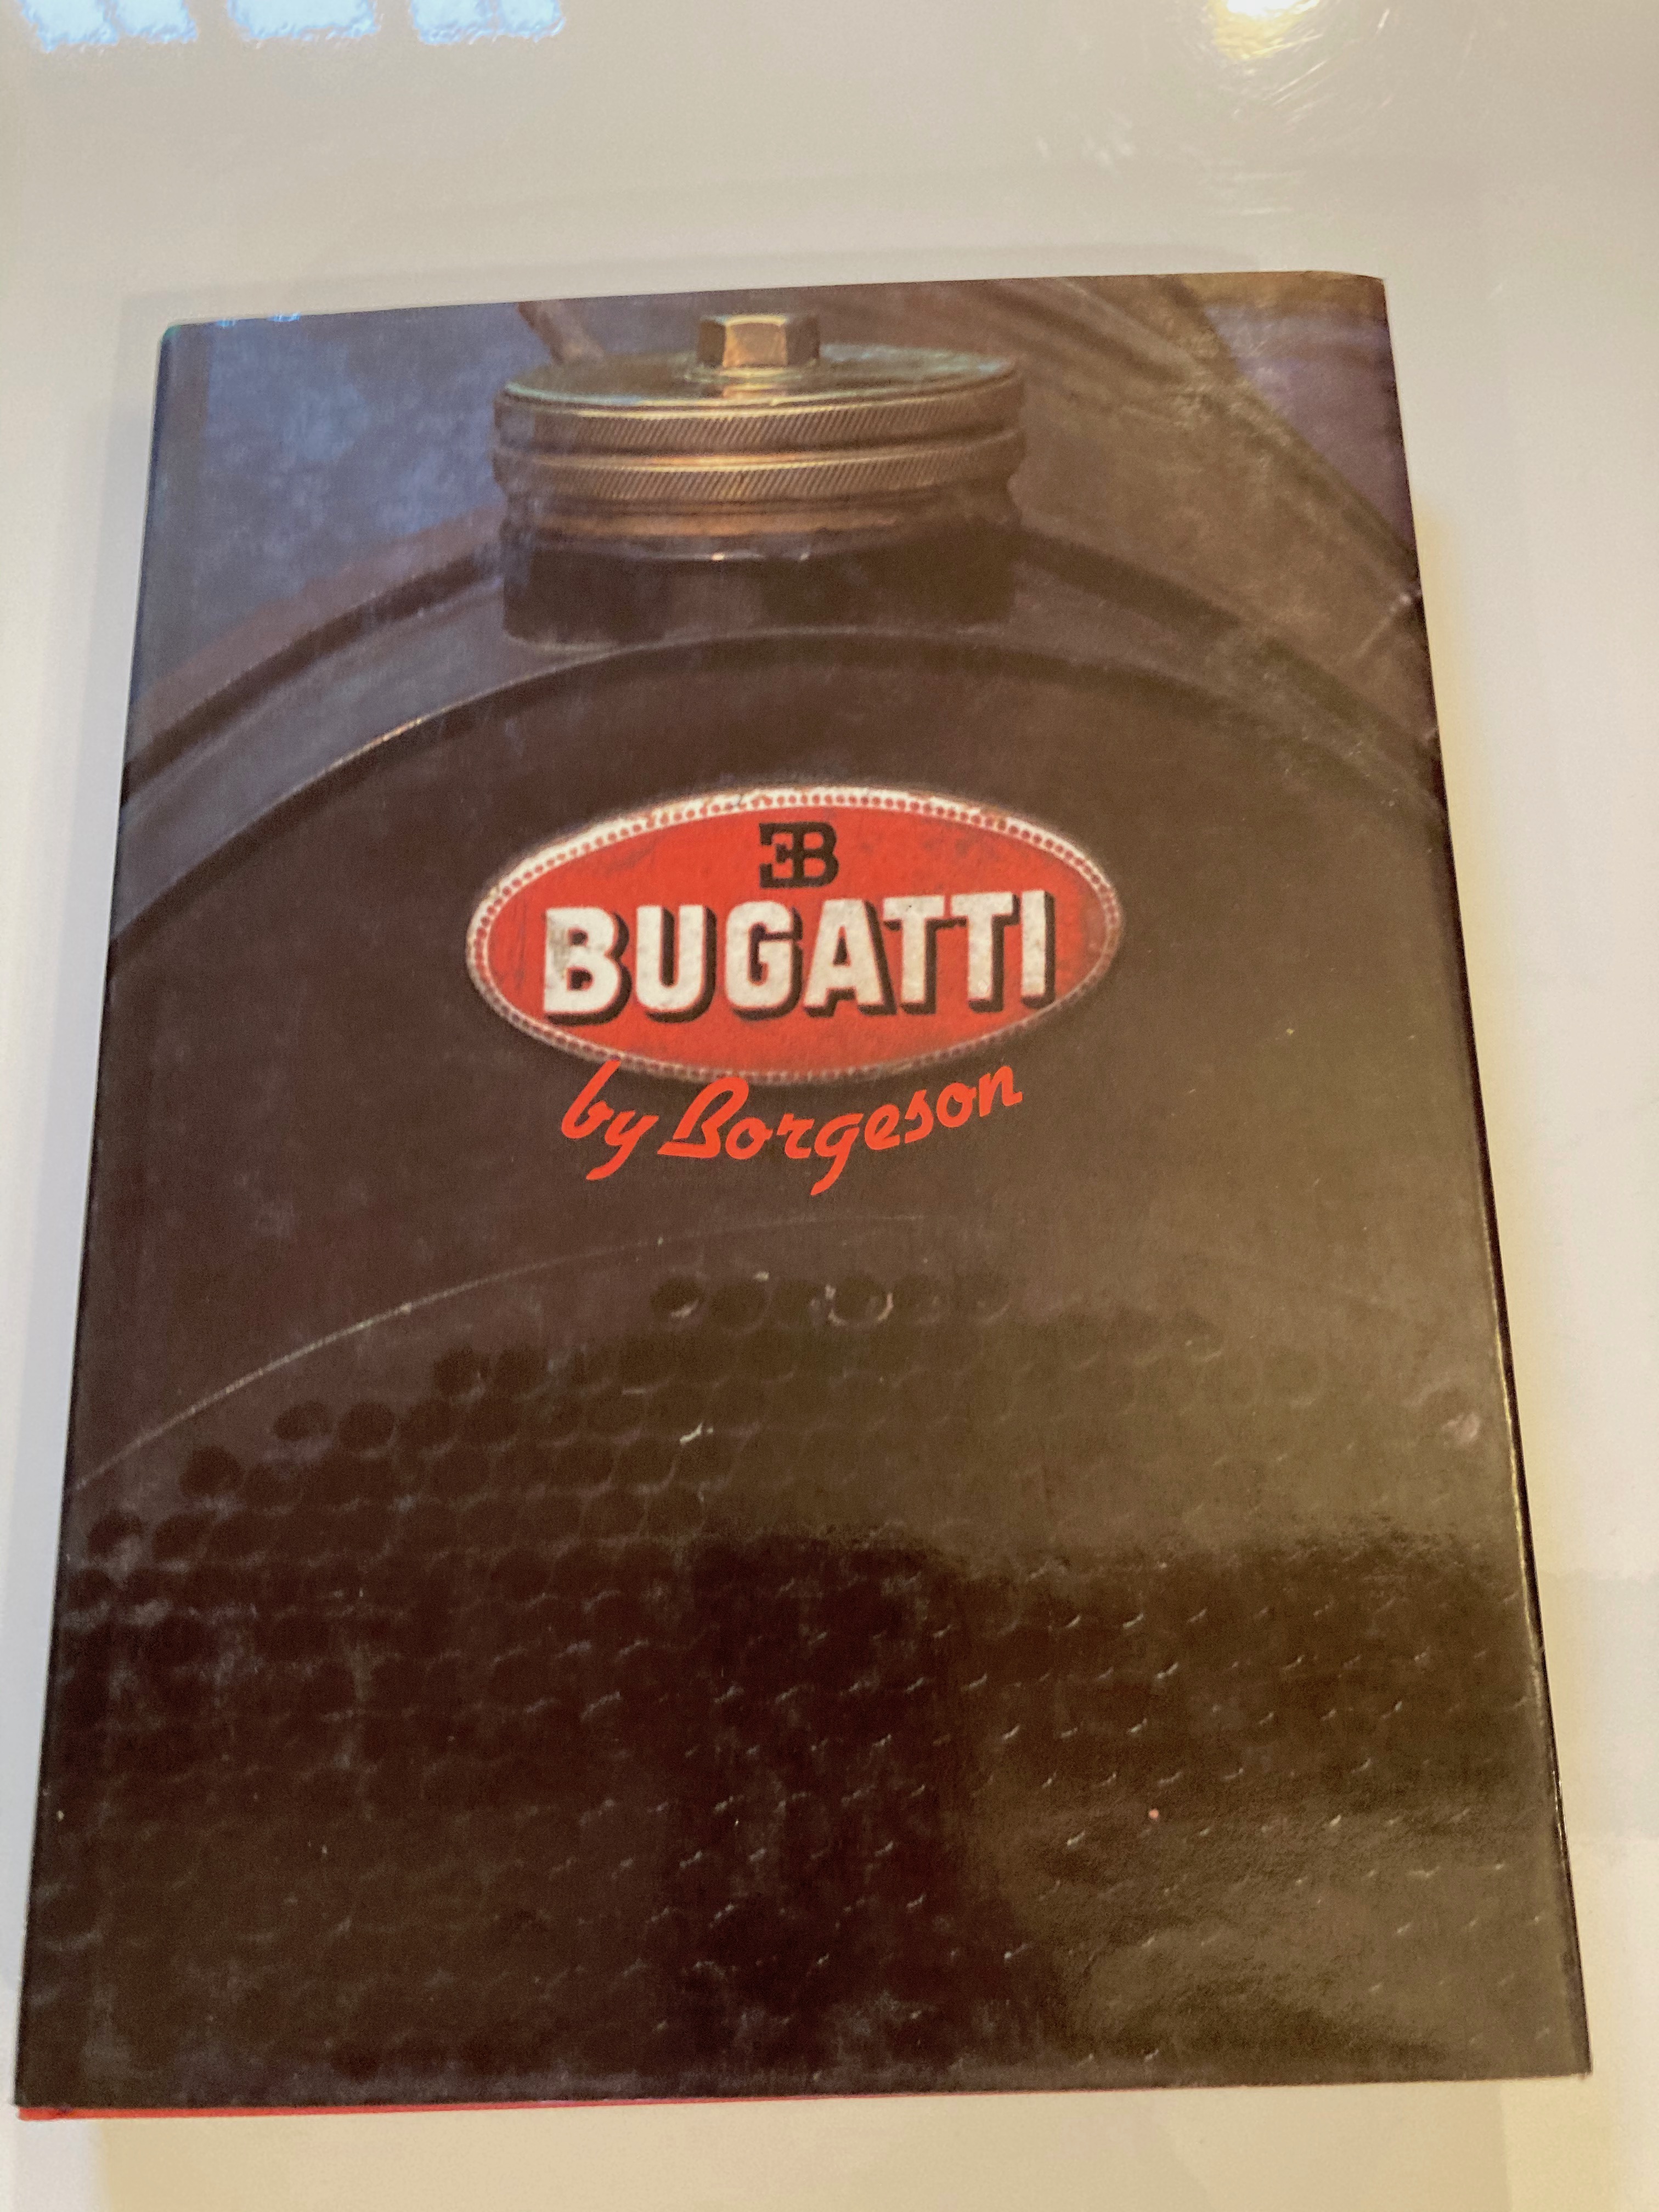 Bugatti by Borgeson - Borgeson, Griffith